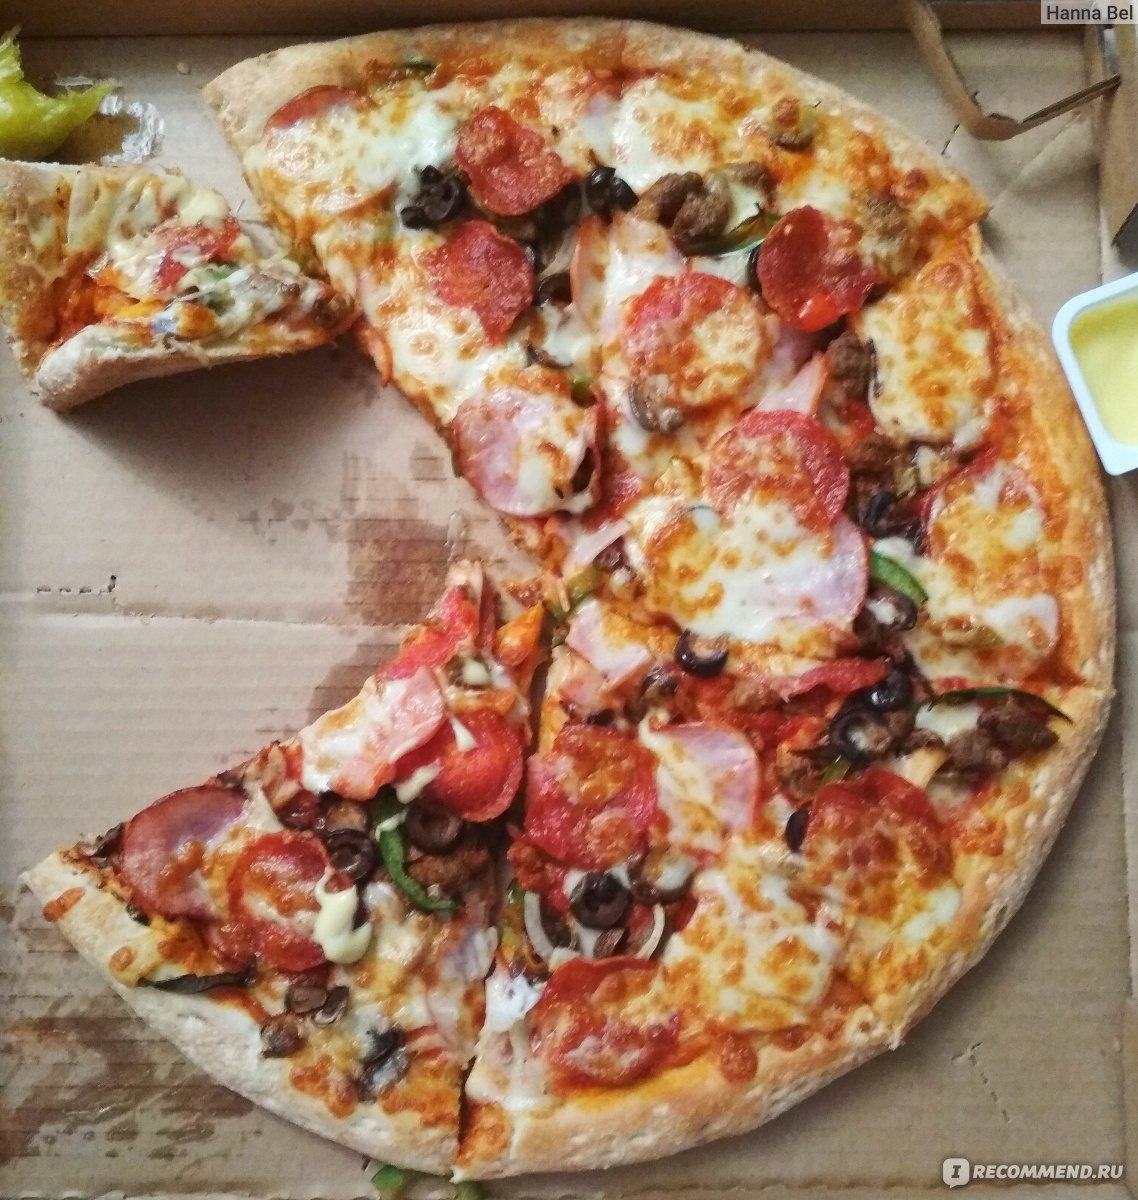 Дом пиццы пиццерия в кременчуге